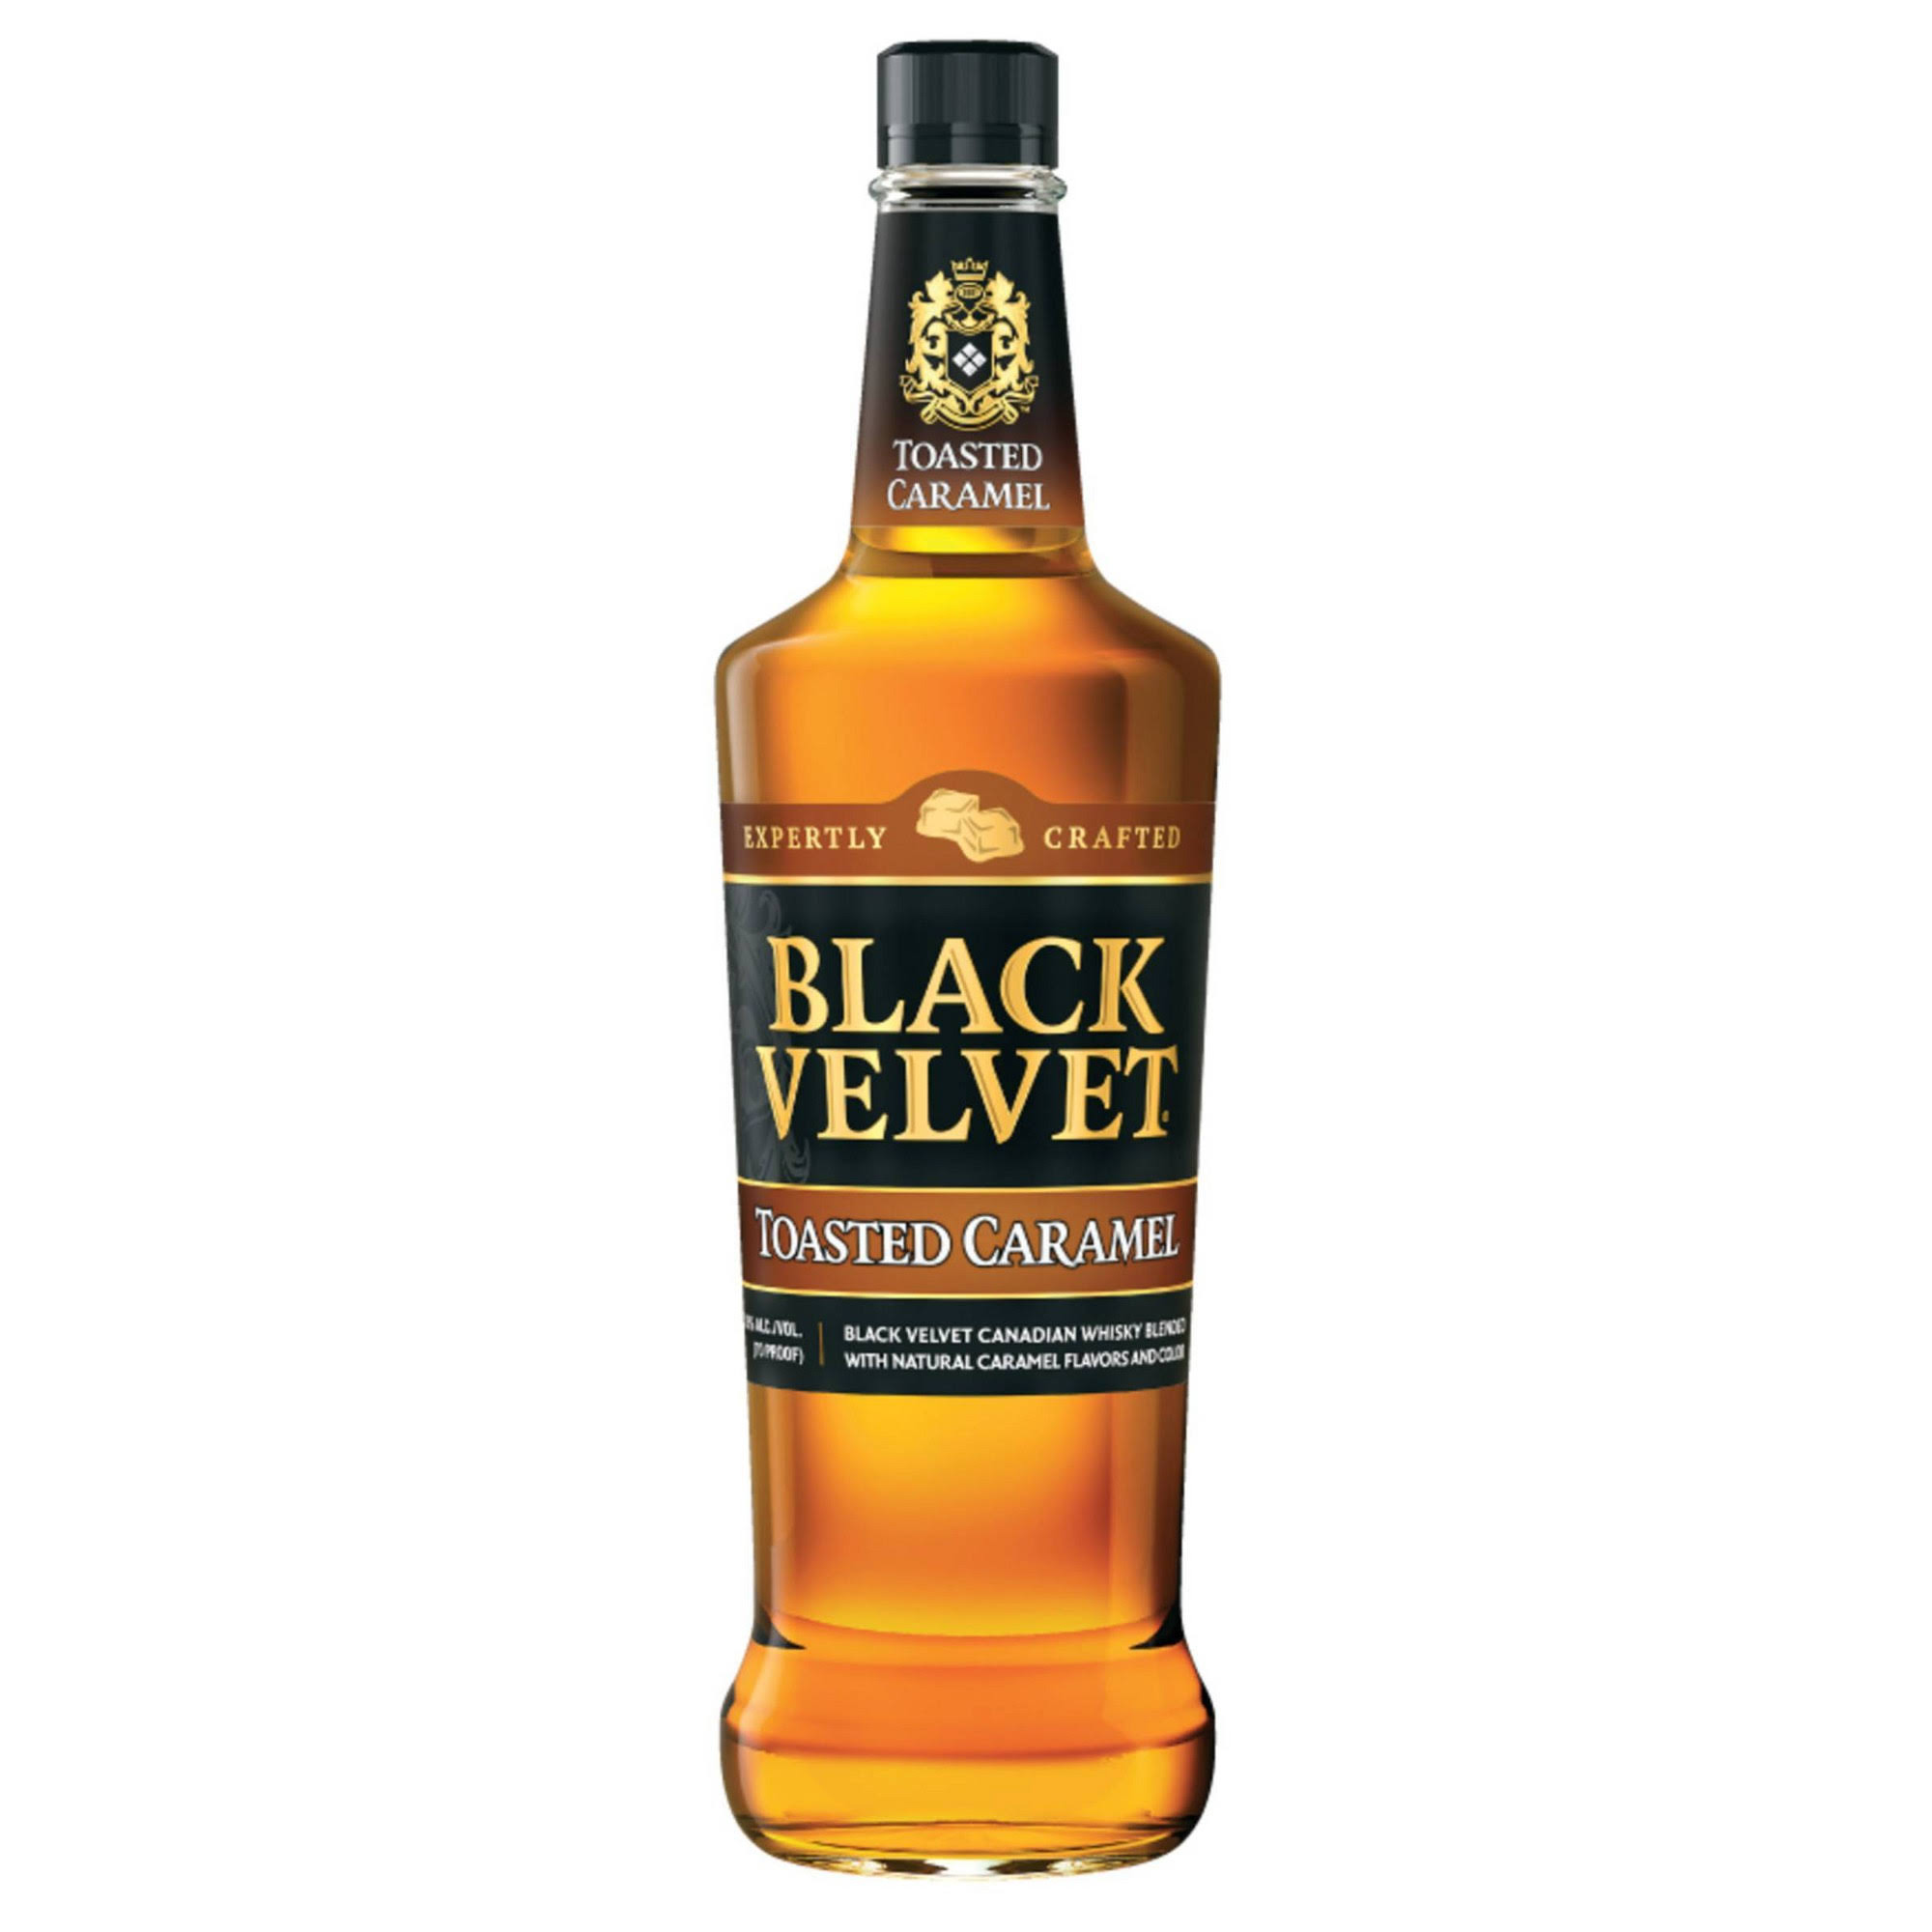 Black Velvet Canadian Whisky Toasted Caramel (750 ml)